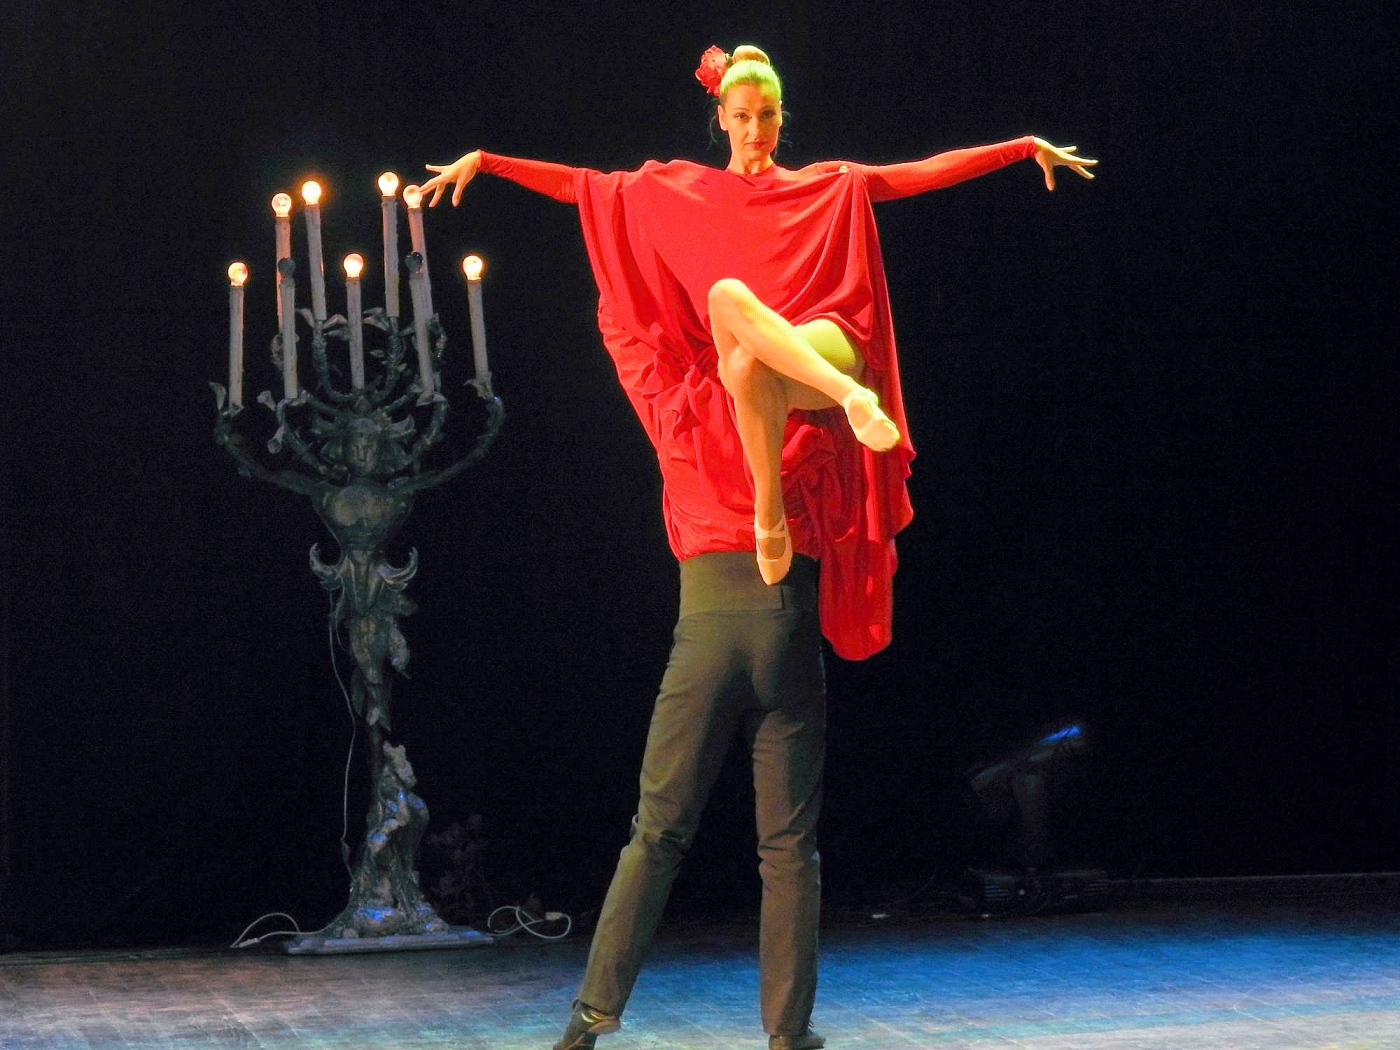 Tancerka w czerwonej kreacji wysoko uniesiona przez partnera ubranego na czarno.